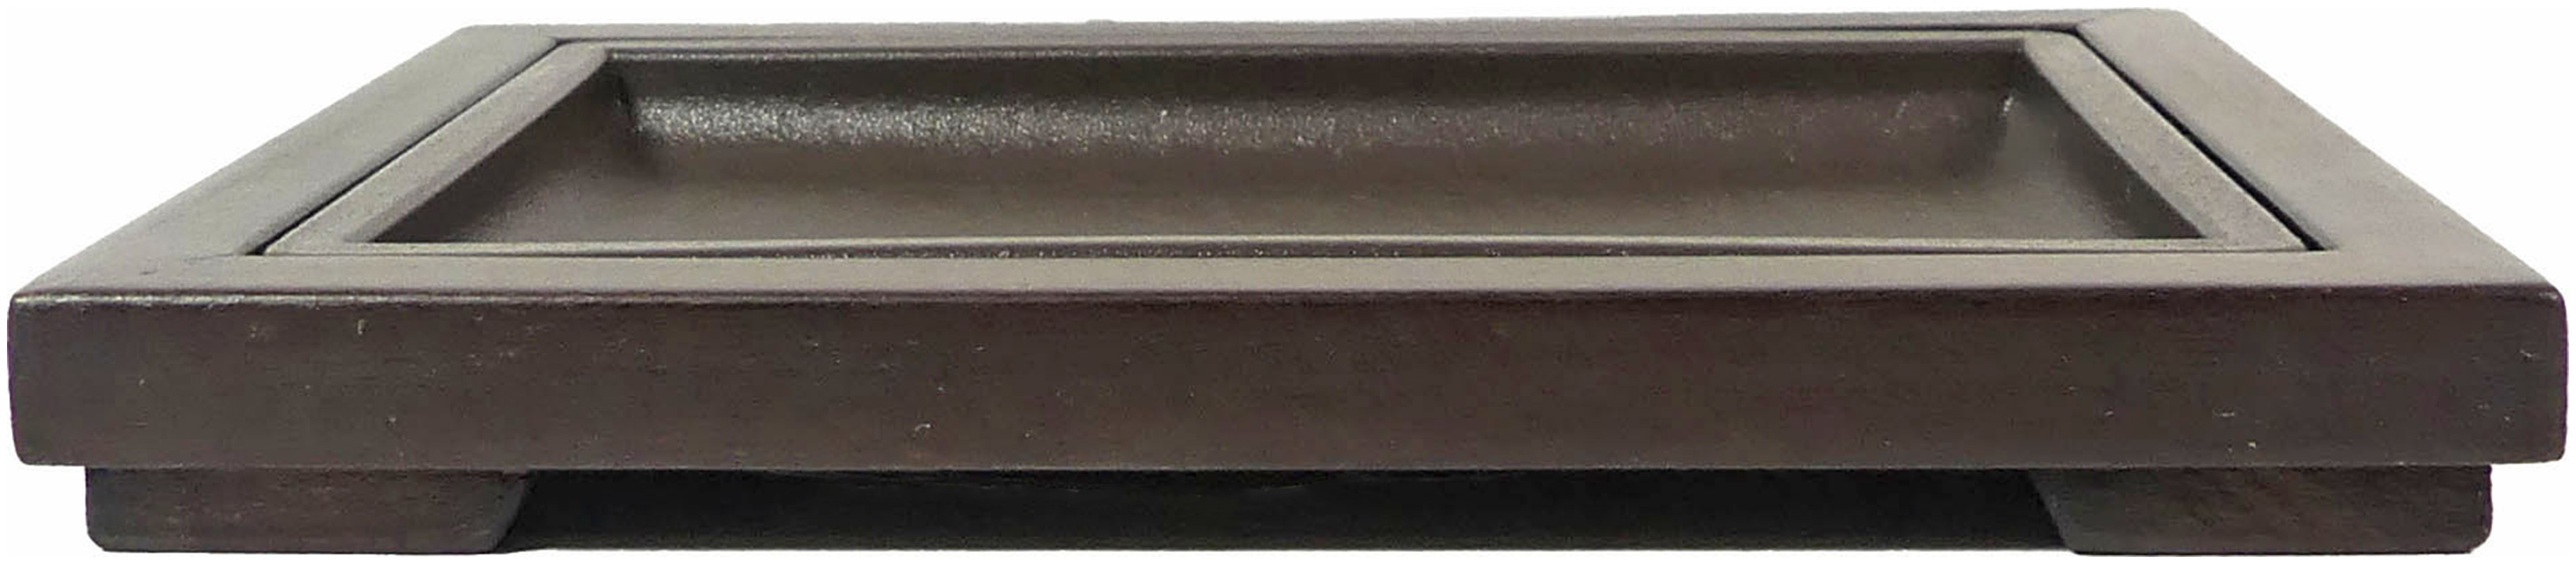 Präsentationstisch mit Plastikwanne

Stellfläche der Wanne: ca. 12,5 x 9 cm